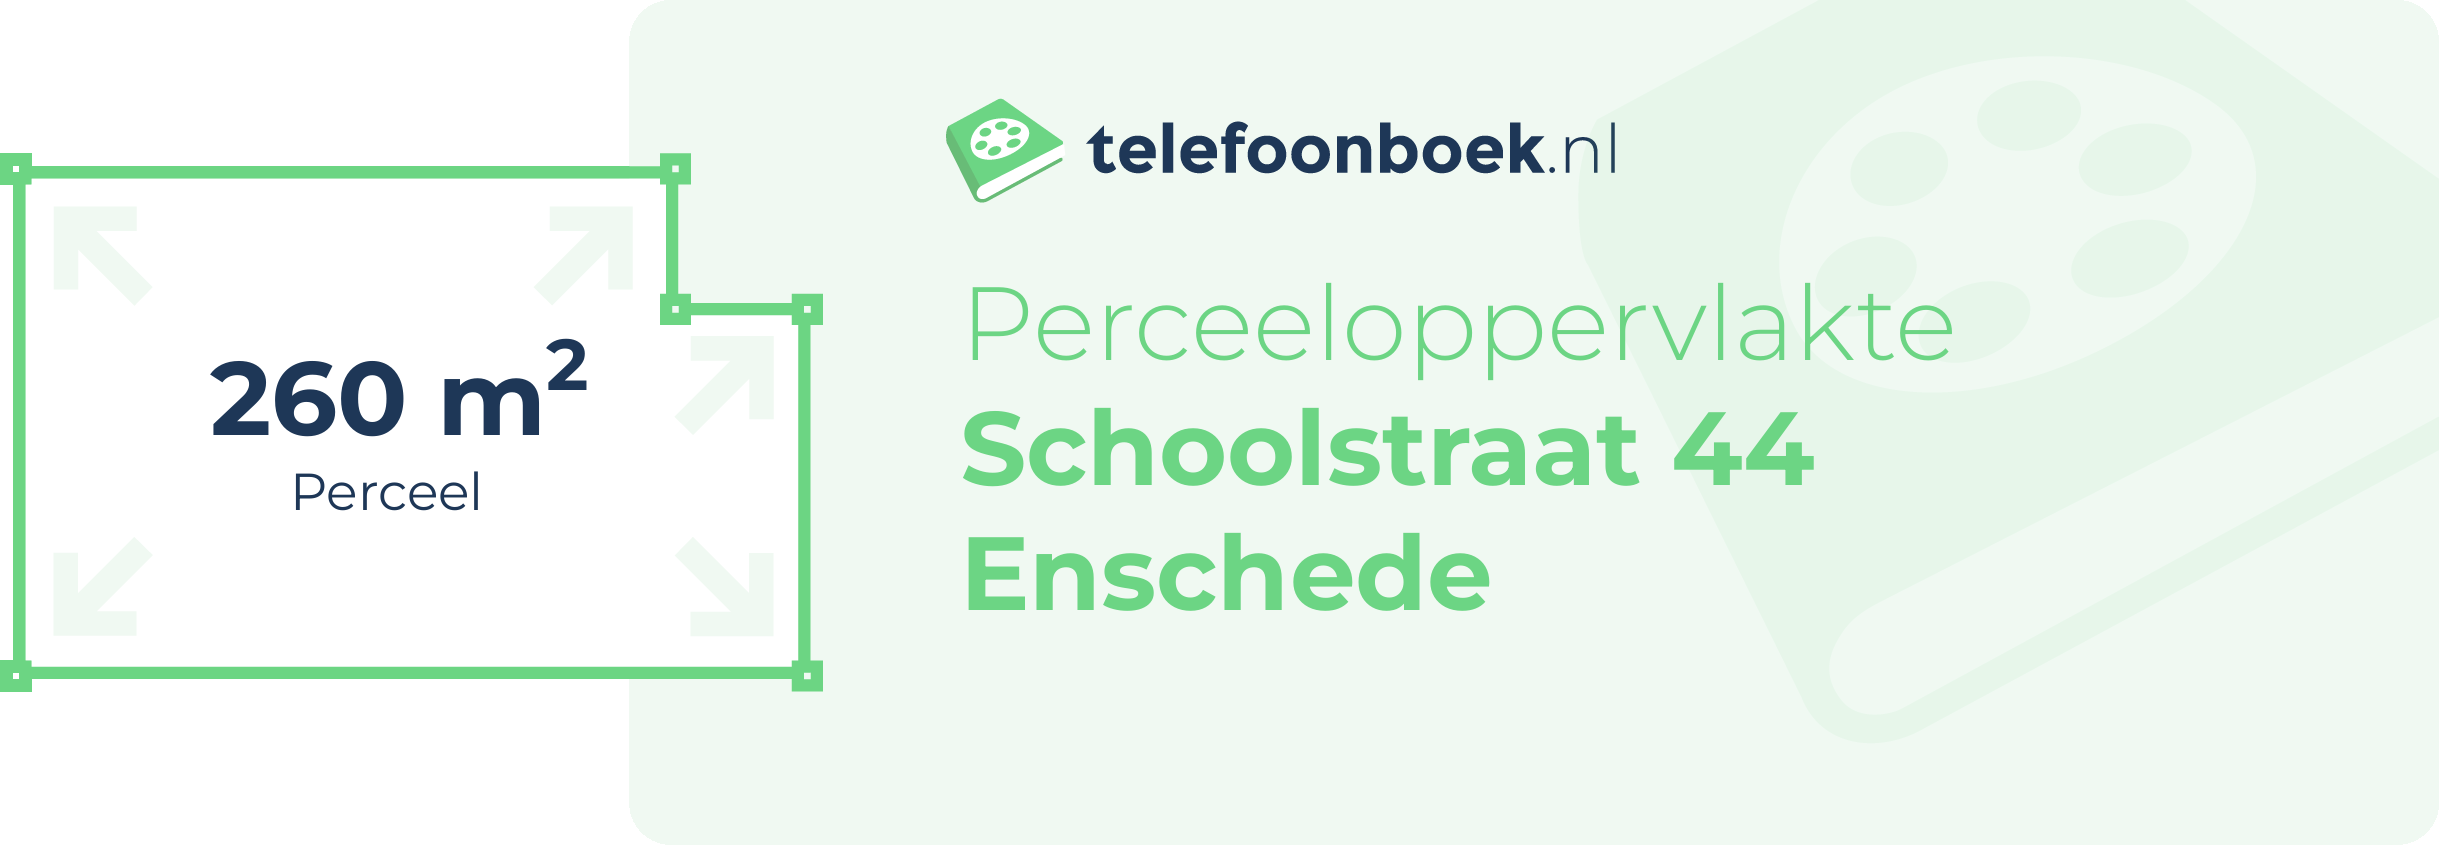 Perceeloppervlakte Schoolstraat 44 Enschede